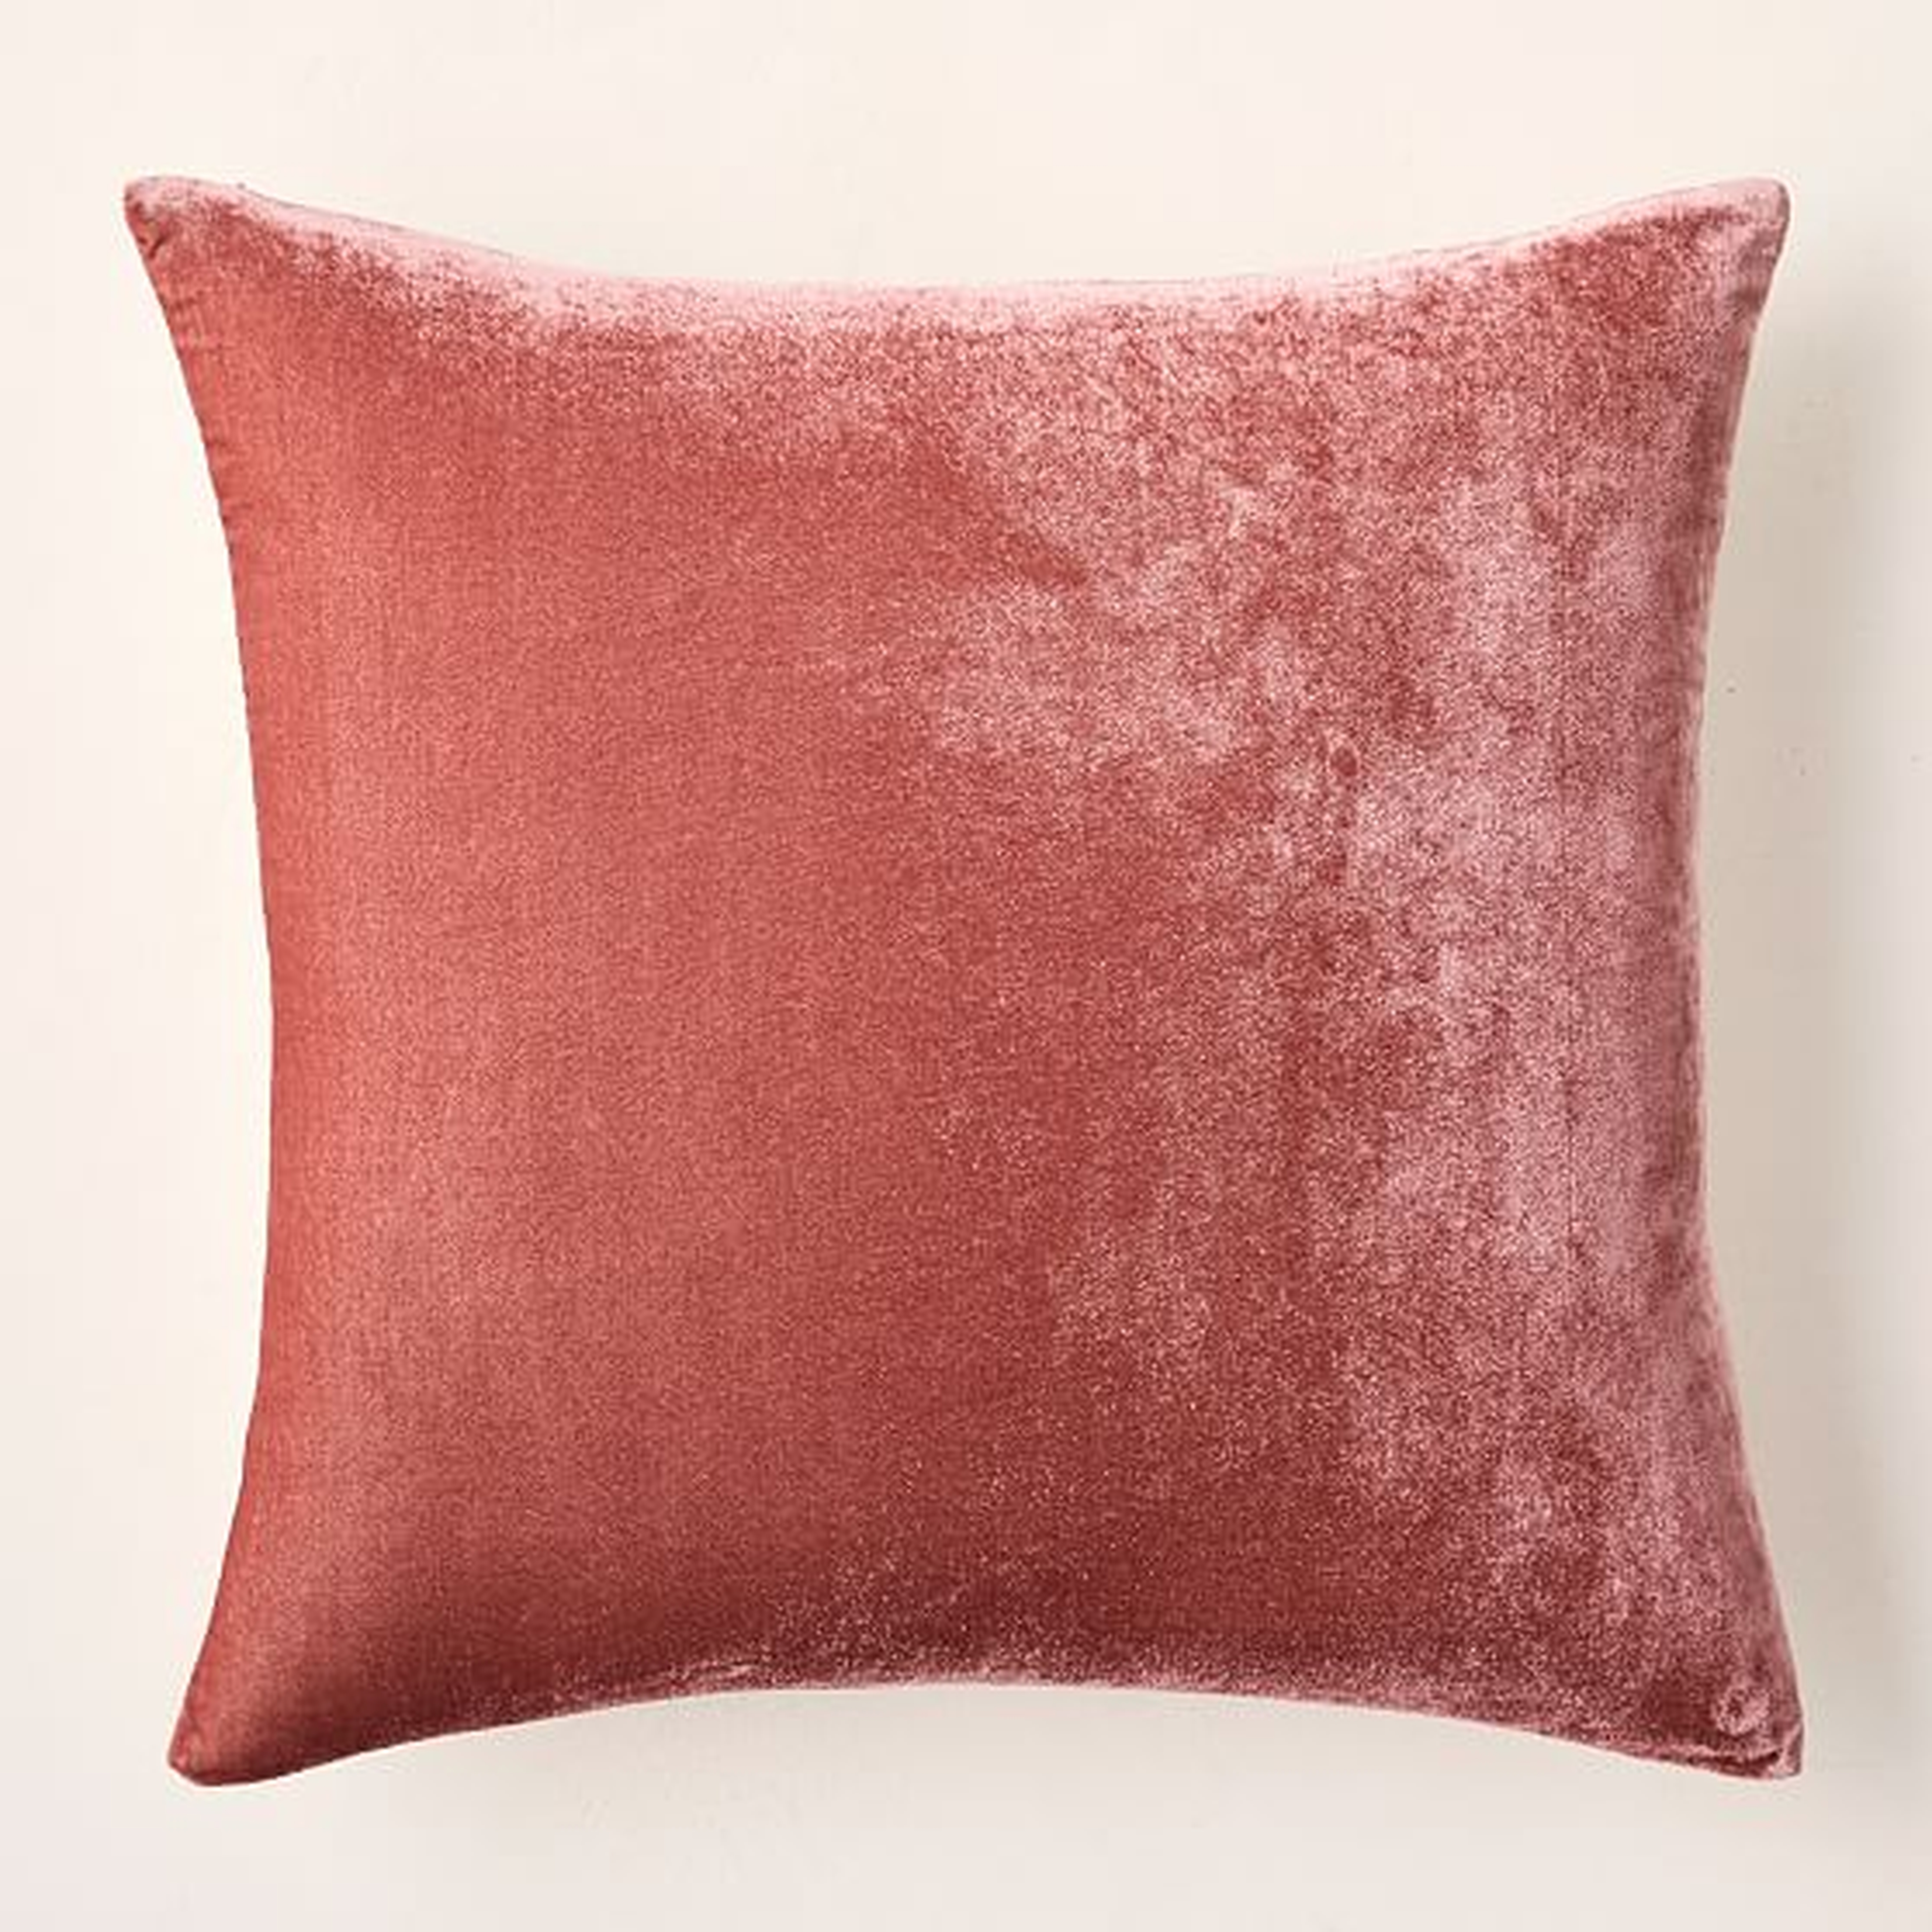 Lush Velvet Pillow Cover, 20"x20", Pink Grapefruit, Set of 2 - West Elm